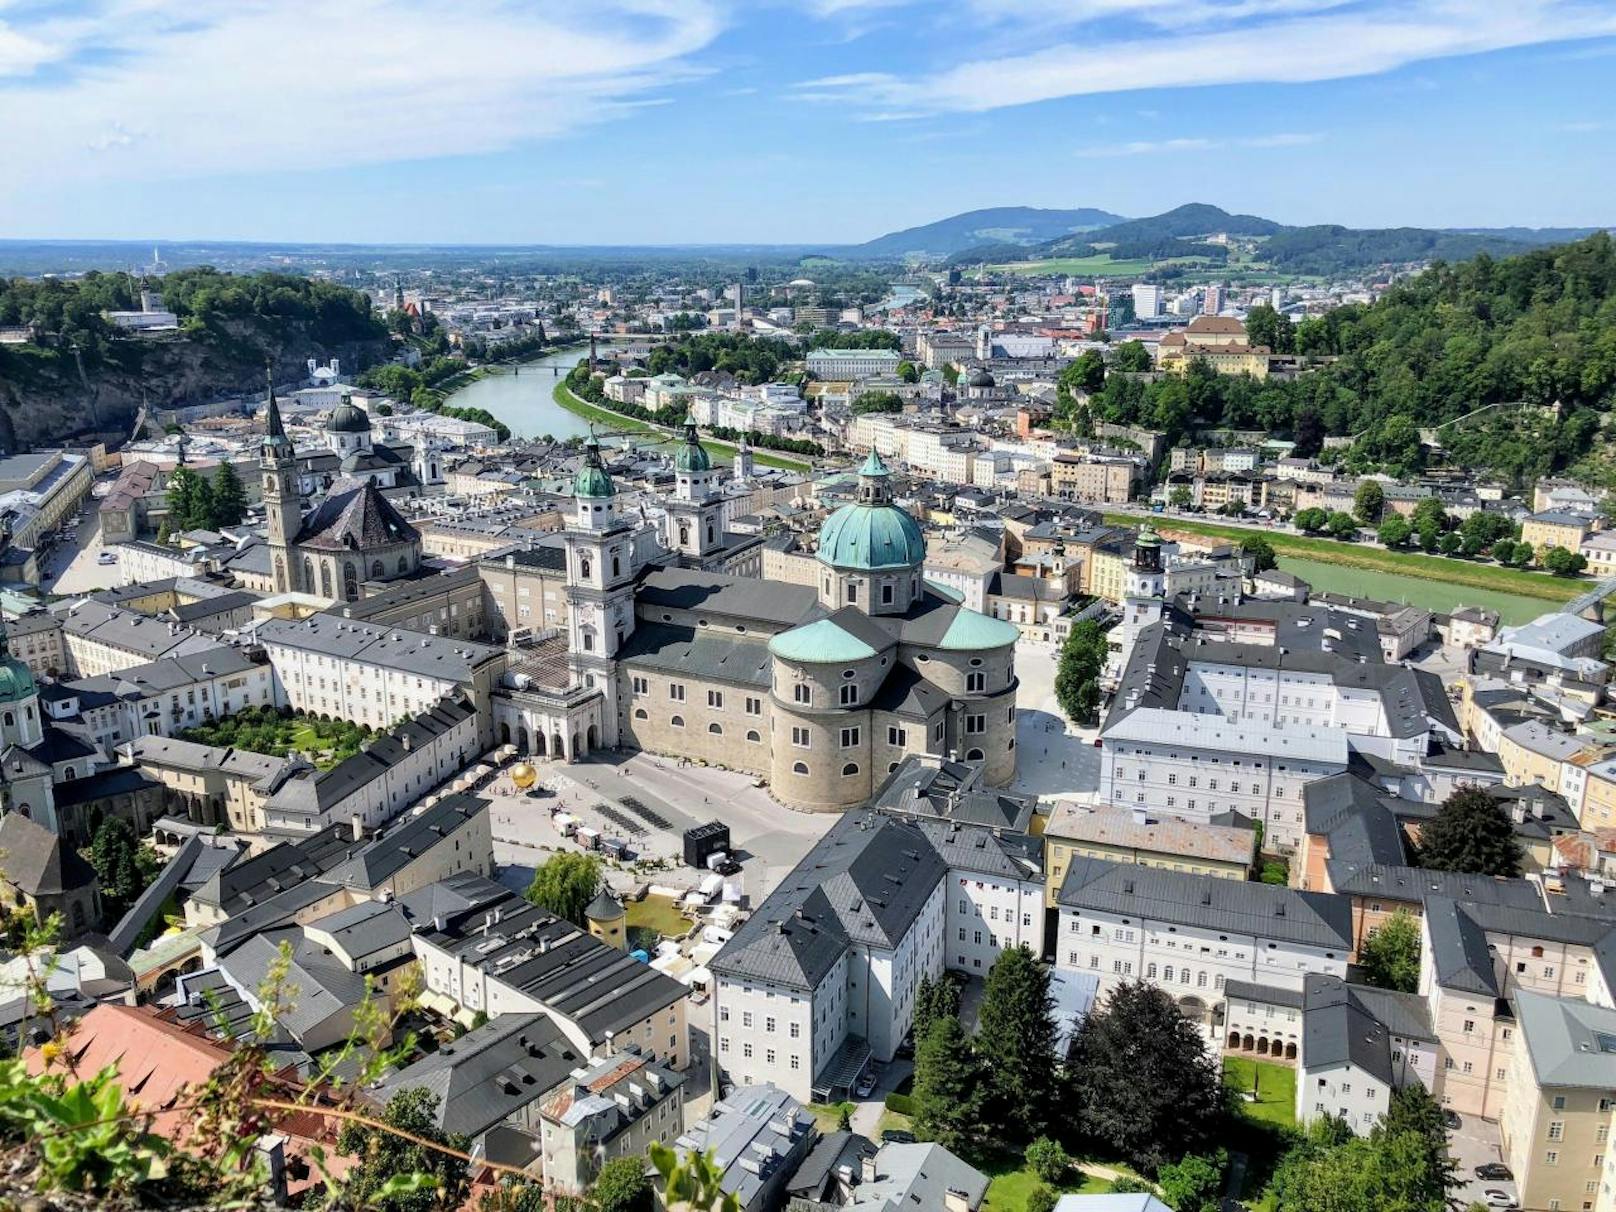 Einen weiteren Grund zum Feiern bietet das 100-jährige Jubiläum der Salzburger Festspiele.Zu diesem Anlass wird es ein noch breiteres Kulturprogramm und Sonderausstellungen und Events geben. Im historischen Kern der Stadt finden Konzerte, Aufführungen, Lesungen und Mozart Matinées statt.